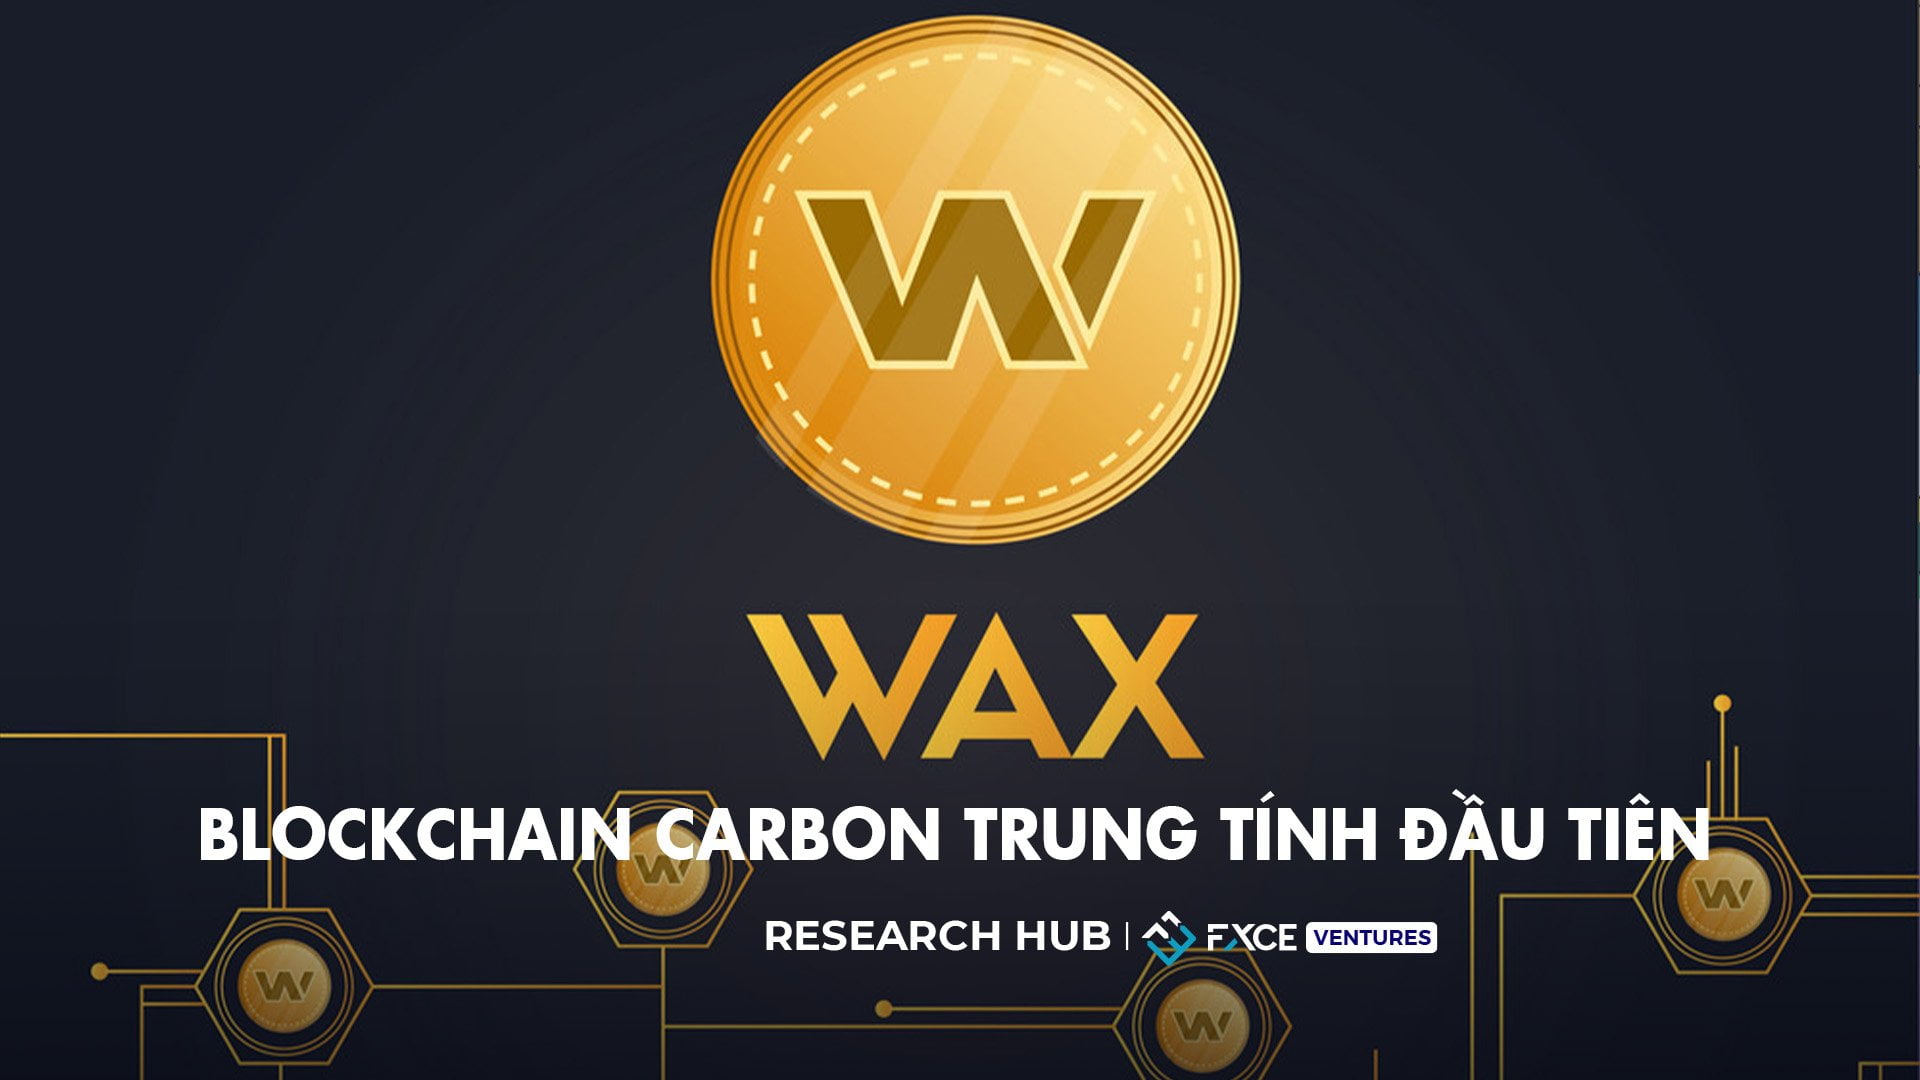 WAX Blockchain - Blockchain carbon trung tính đầu tiên